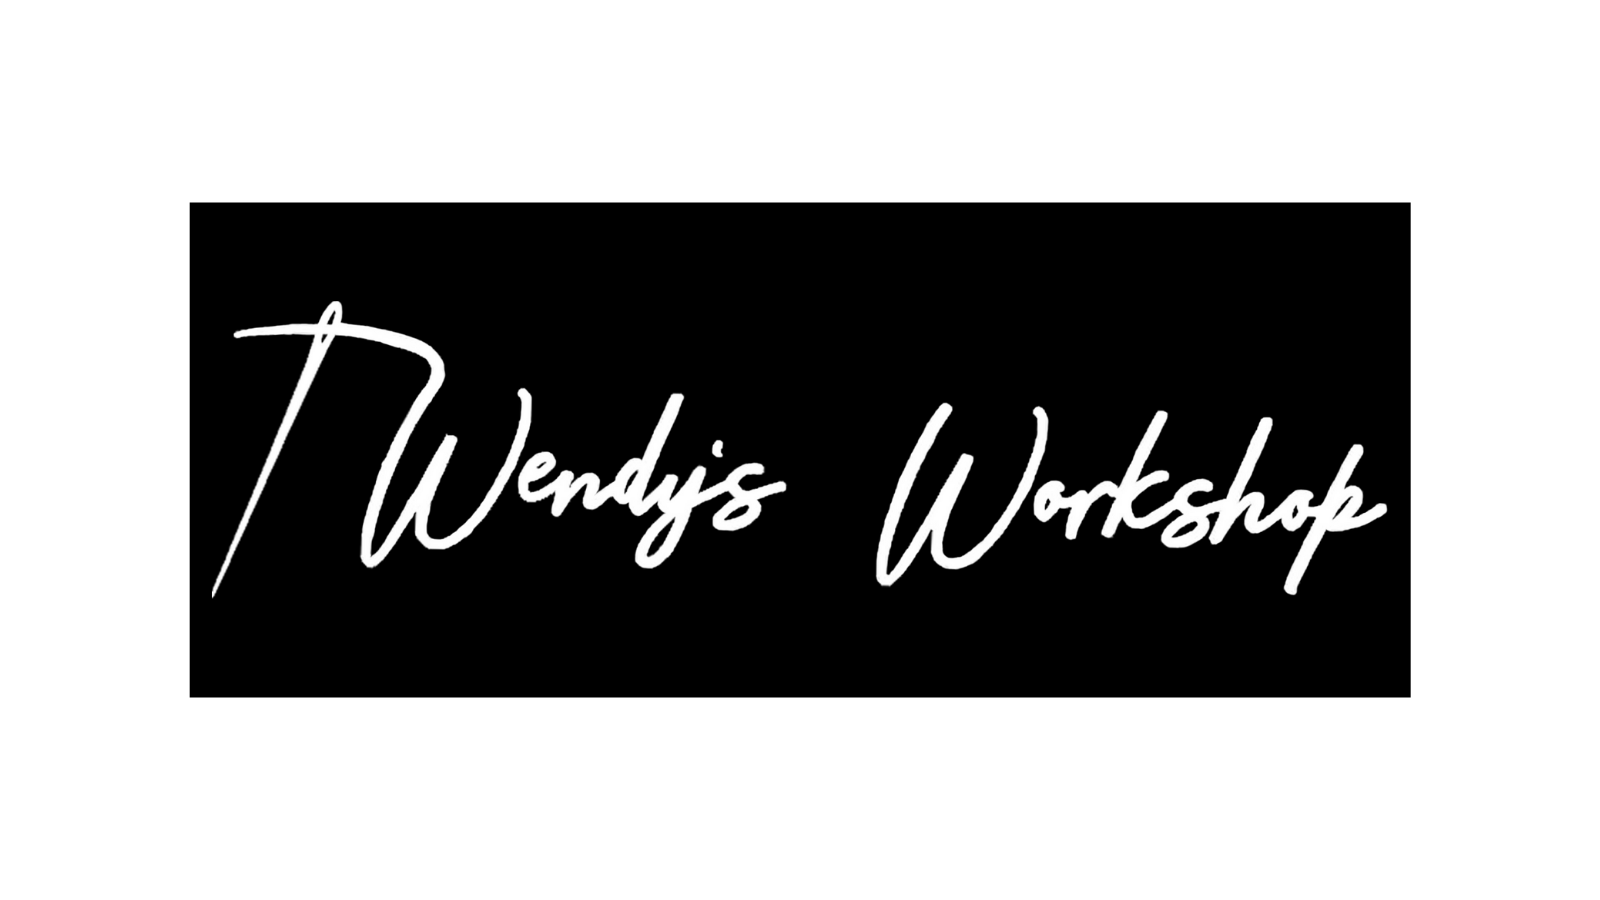 Wendy's Workshop